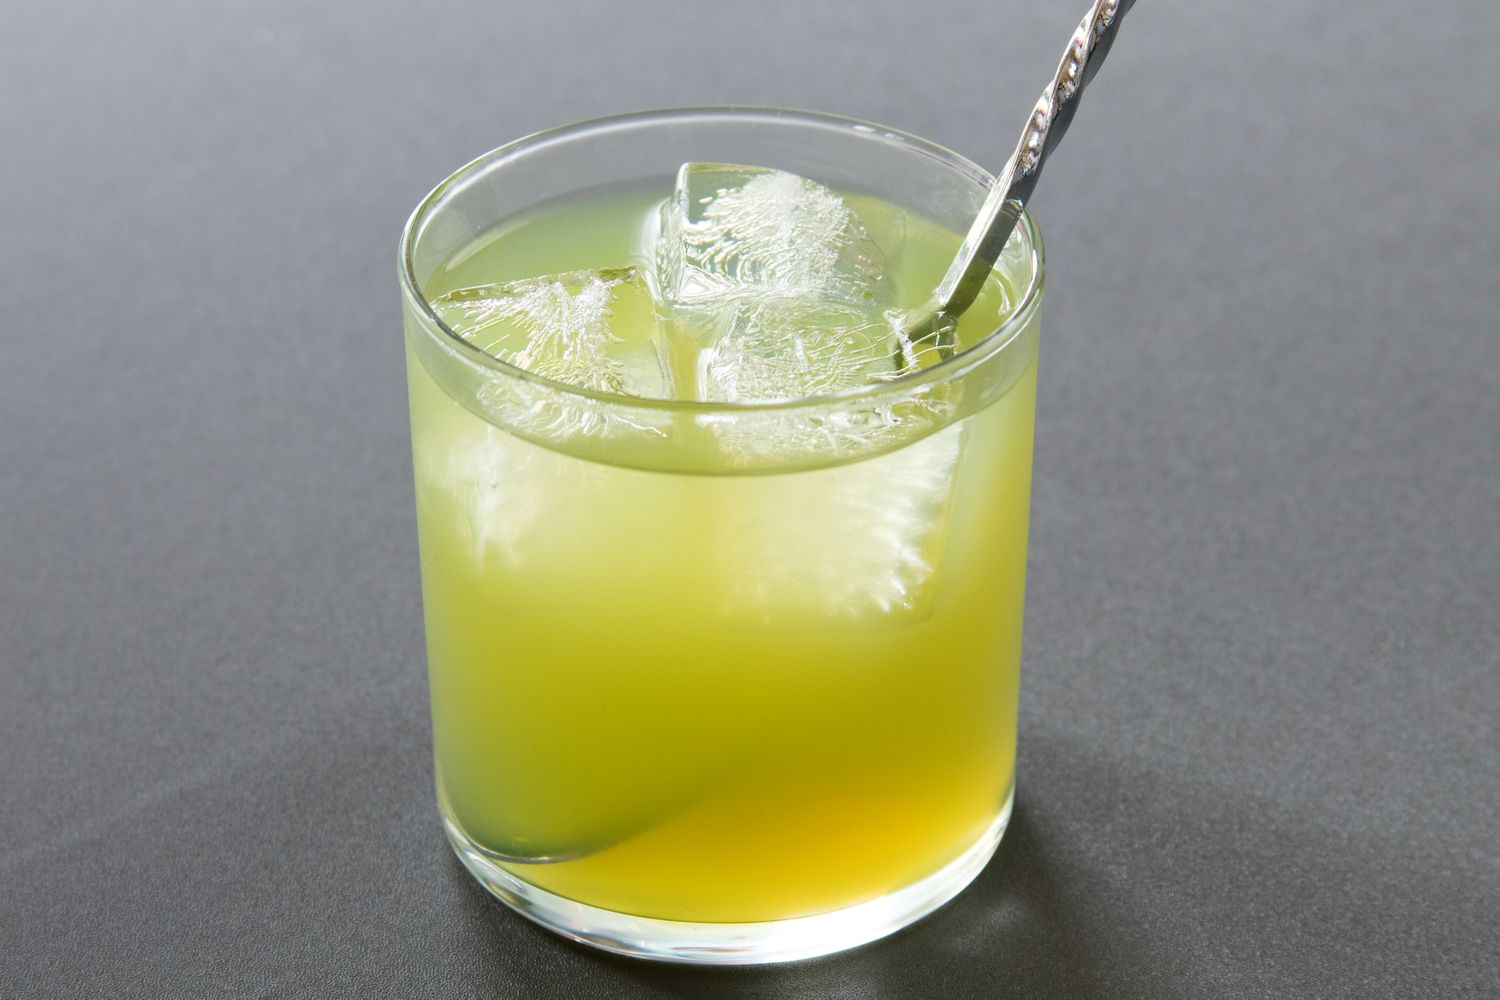 Stirring an Incredible Hulk Cocktail